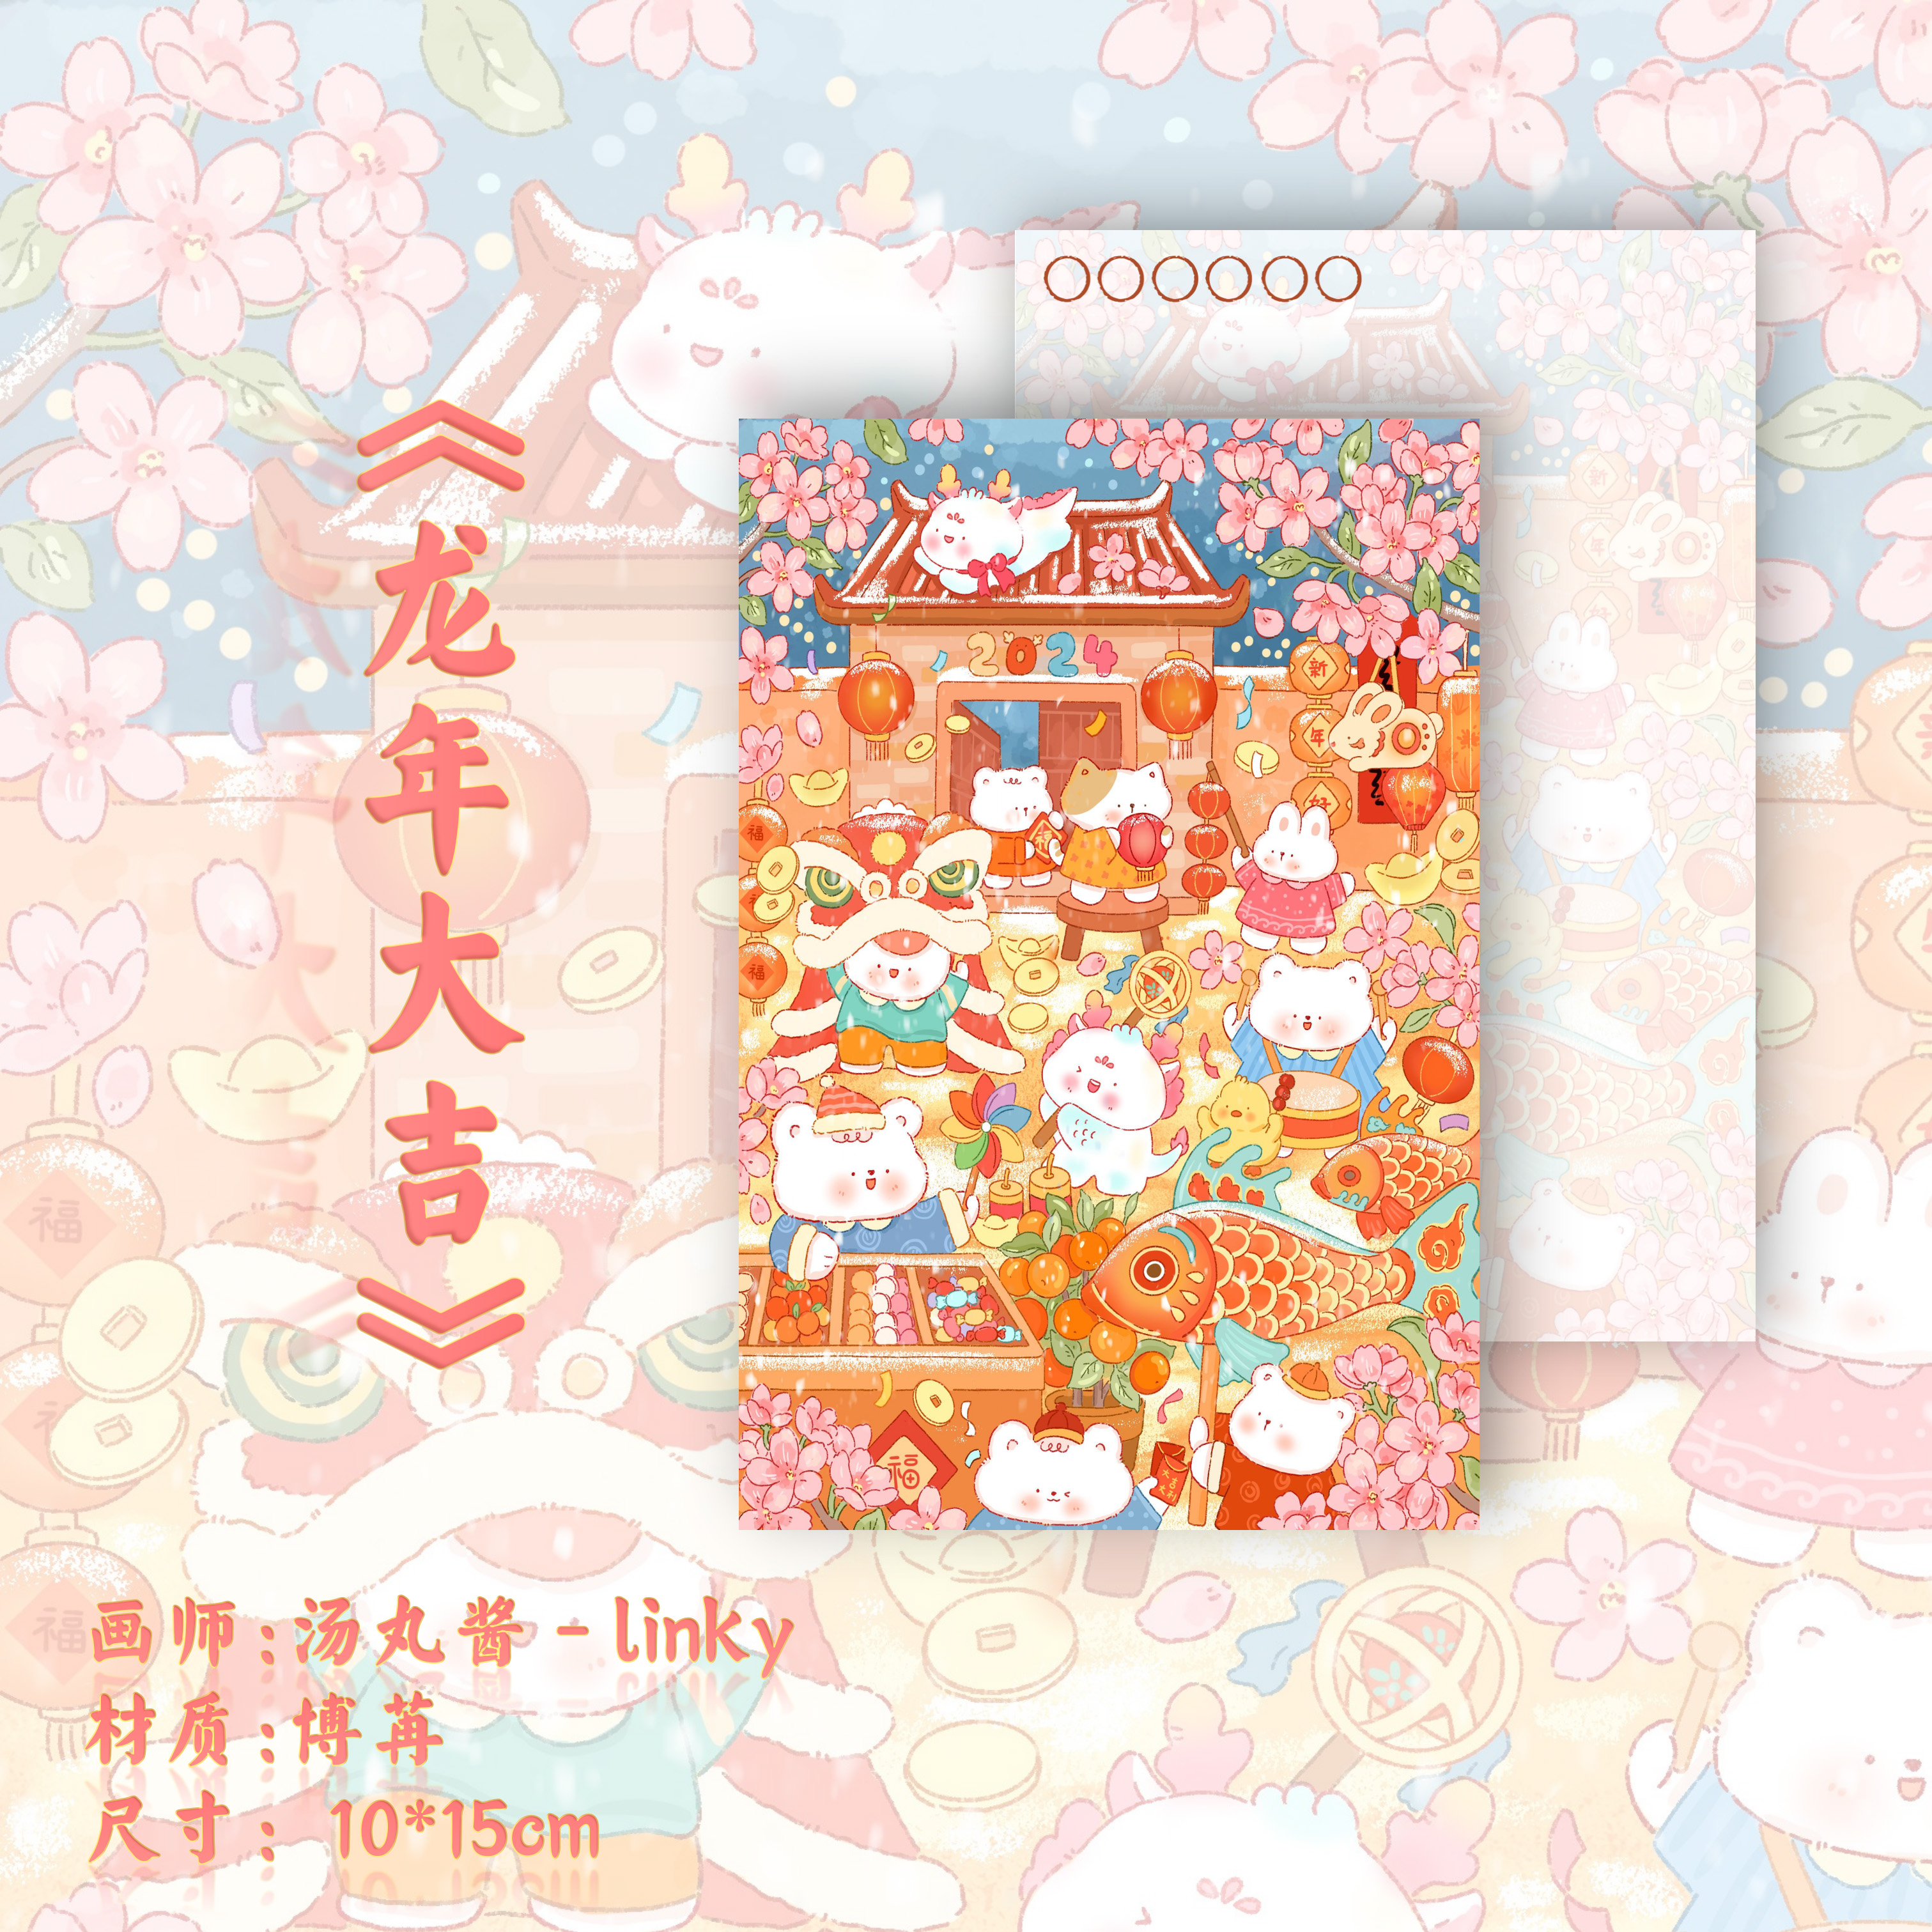 「龙年大吉」原创龙年新年明信片春节插画手绘小众珠光创意贺卡